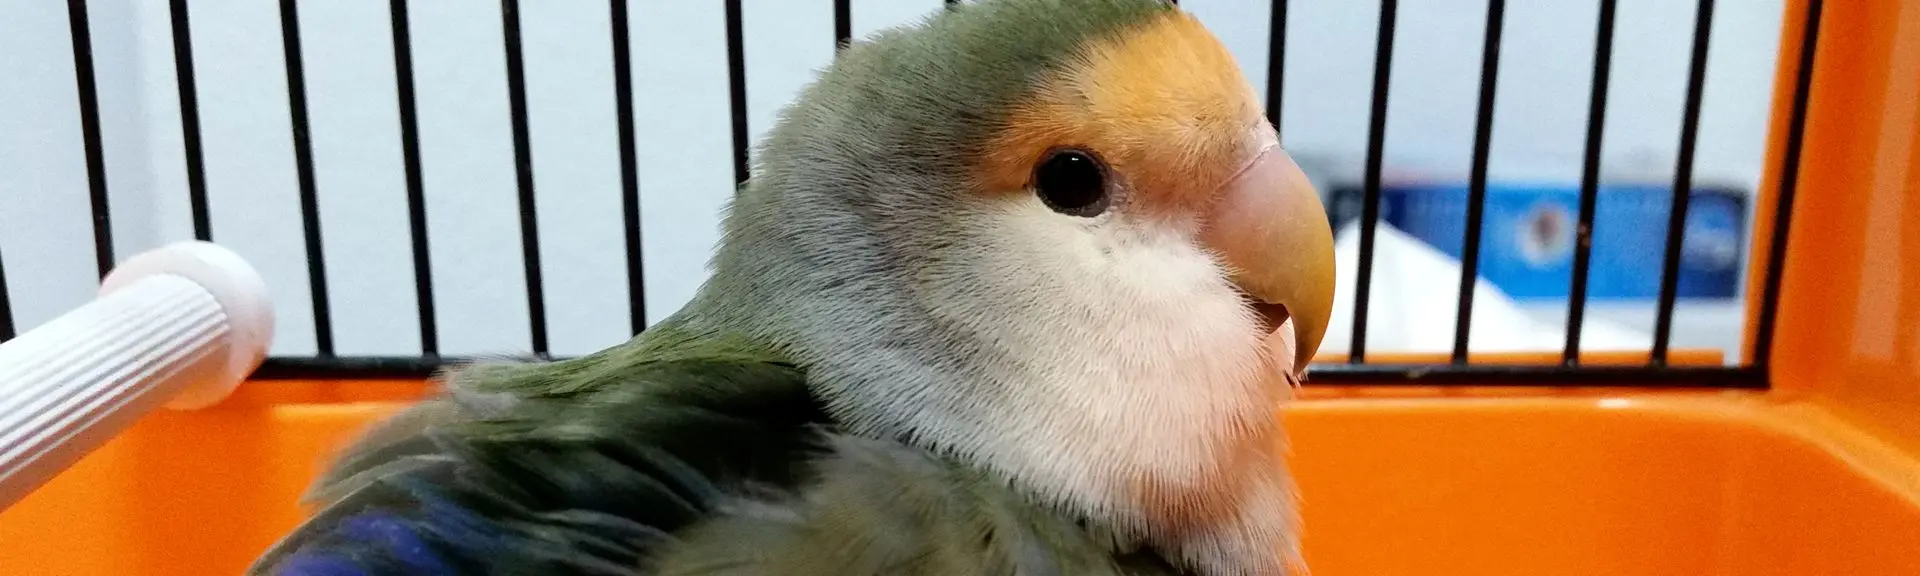 acciones de las aves frente a un estimulo - Cómo reaccionan los animales a los estímulos